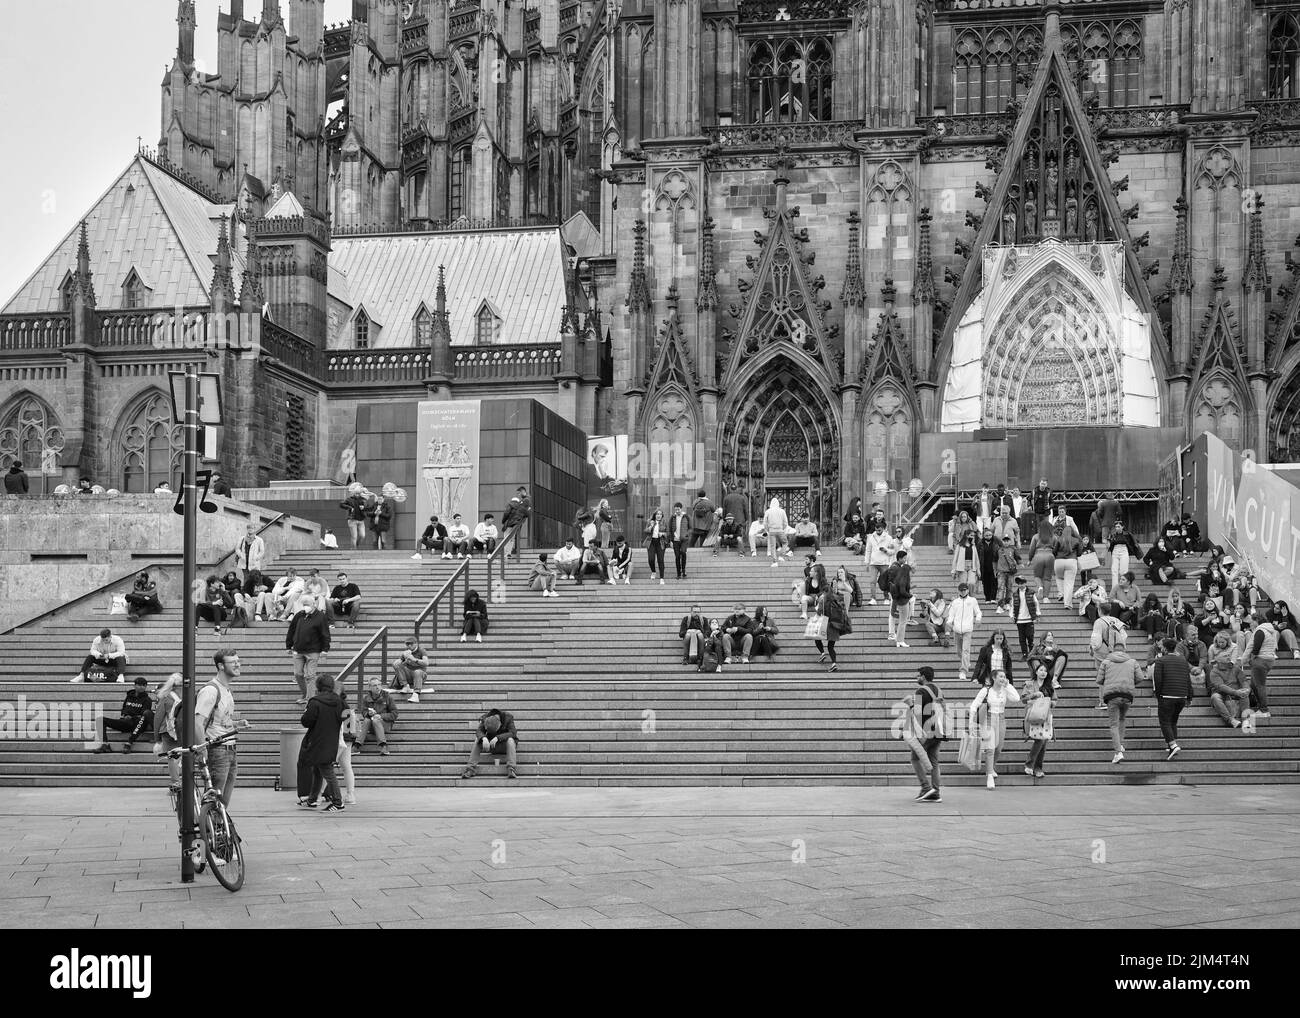 Menschen auf der Treppe vor dem Kölner Dom in Richtung Hauptbahnhof, schwarz-weiß Foto Stockfoto